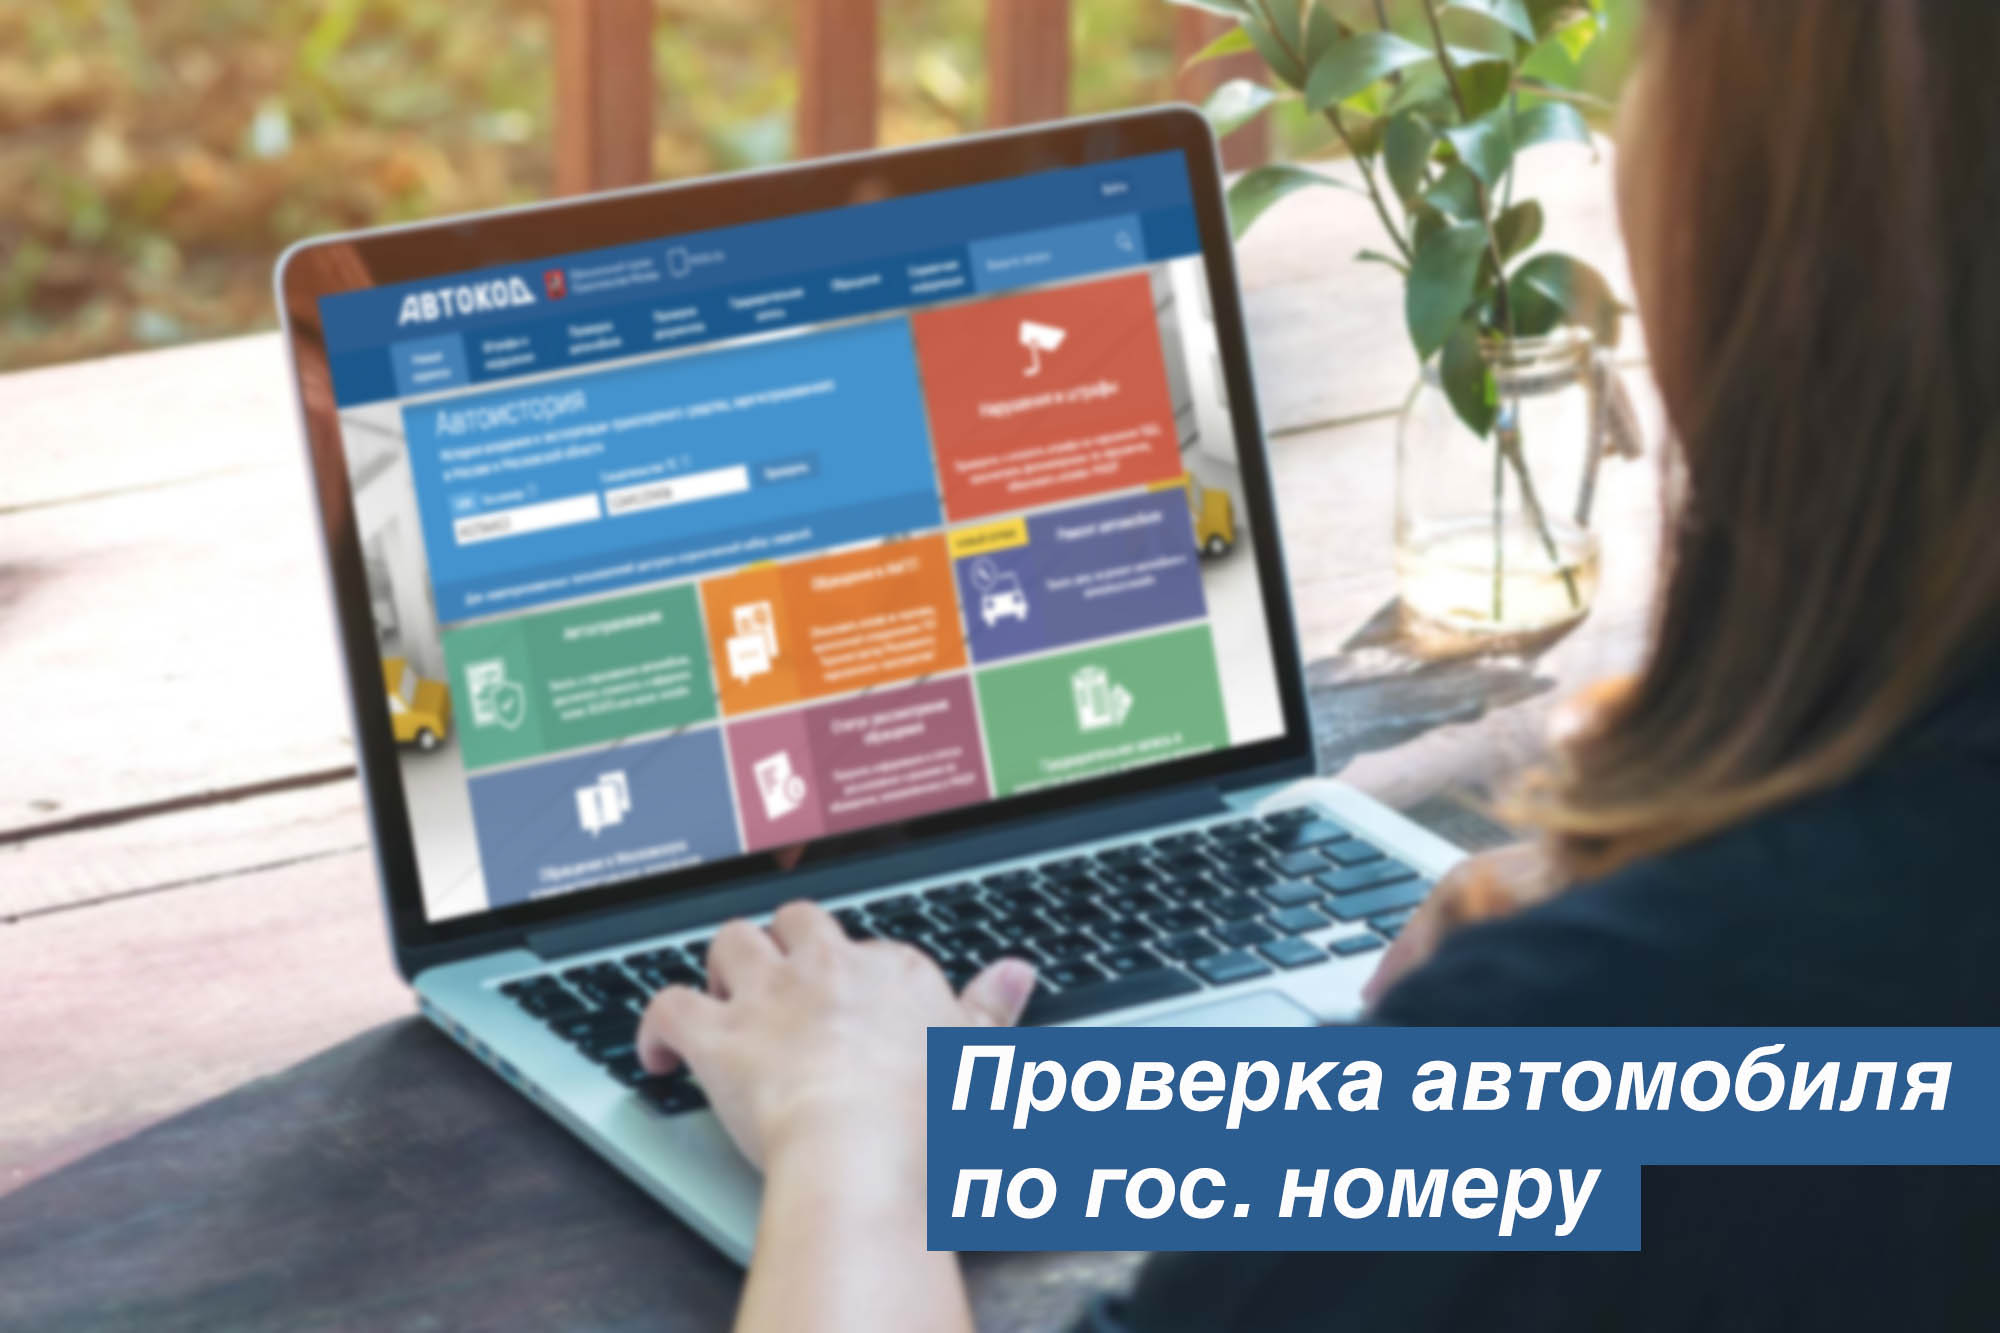 Получение гражданства для носителей русского языка 2020 спб